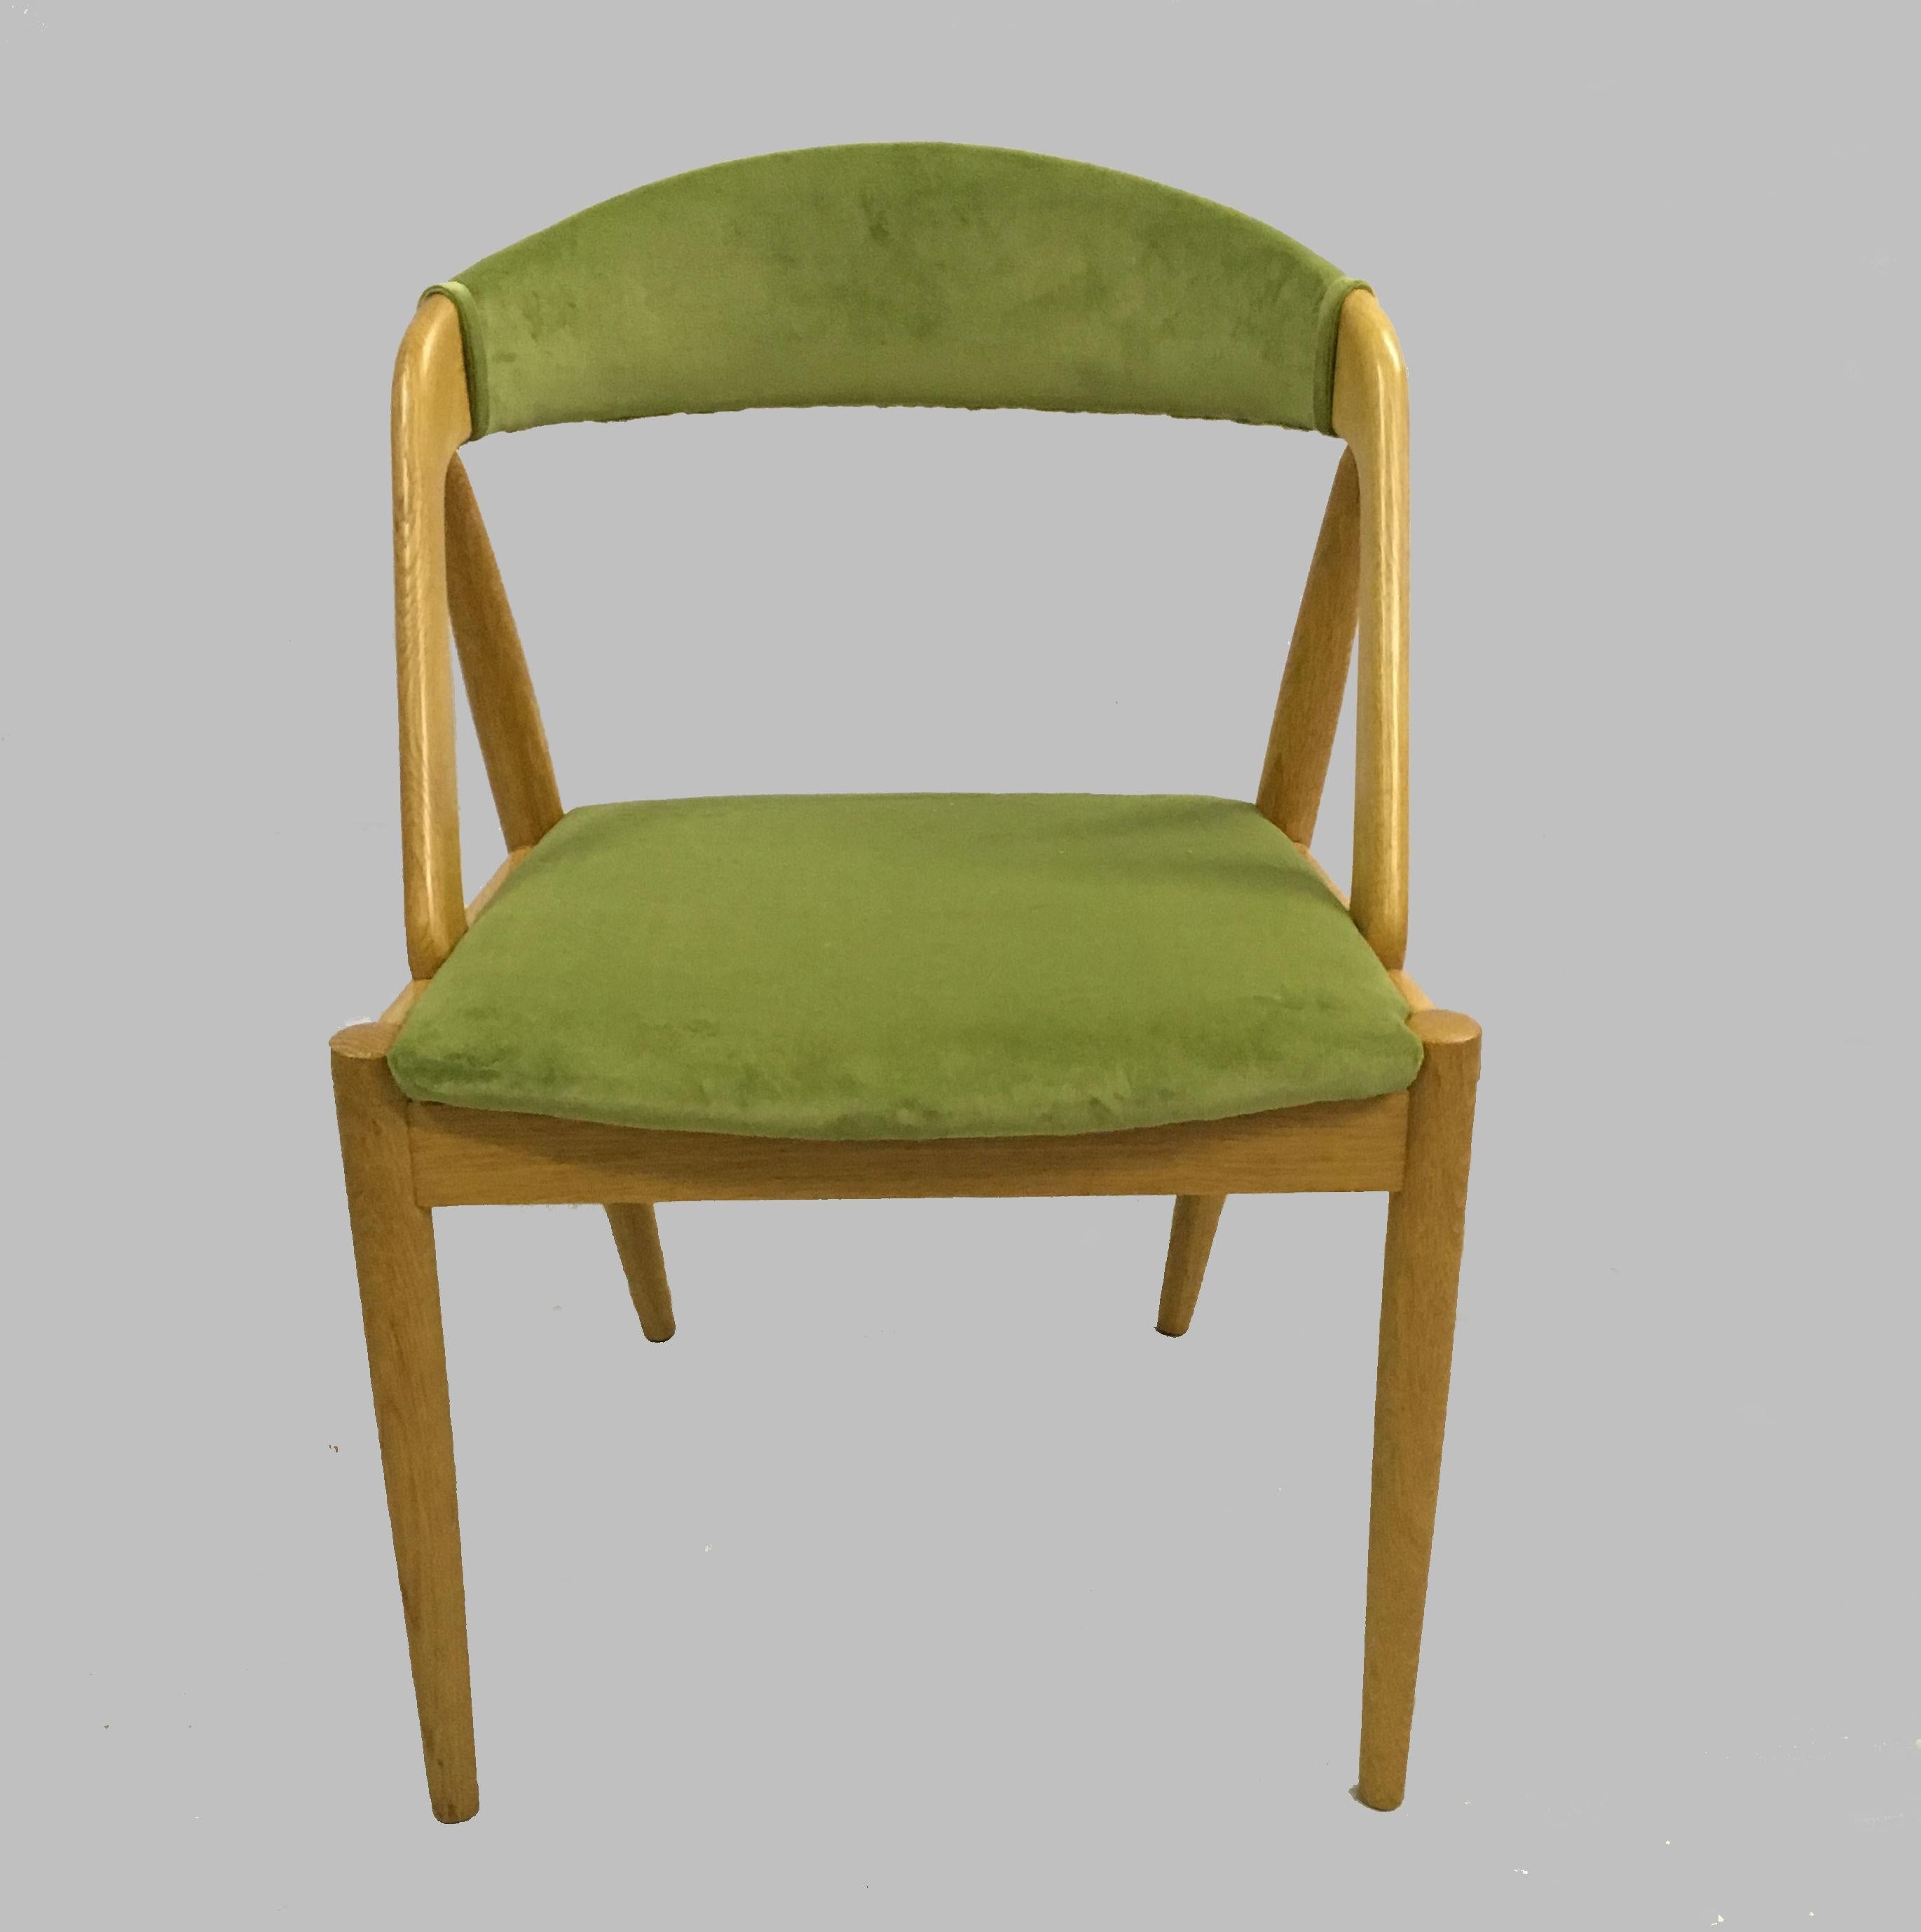 Ensemble de quatre chaises de salle à manger en chêne entièrement restaurées, conçues par Kai Kristiansen pour Schou Andersens Møbelfabrik en 1956.

Les chaises ont été vérifiées, restaurées si nécessaire et revernies par notre ébéniste pour